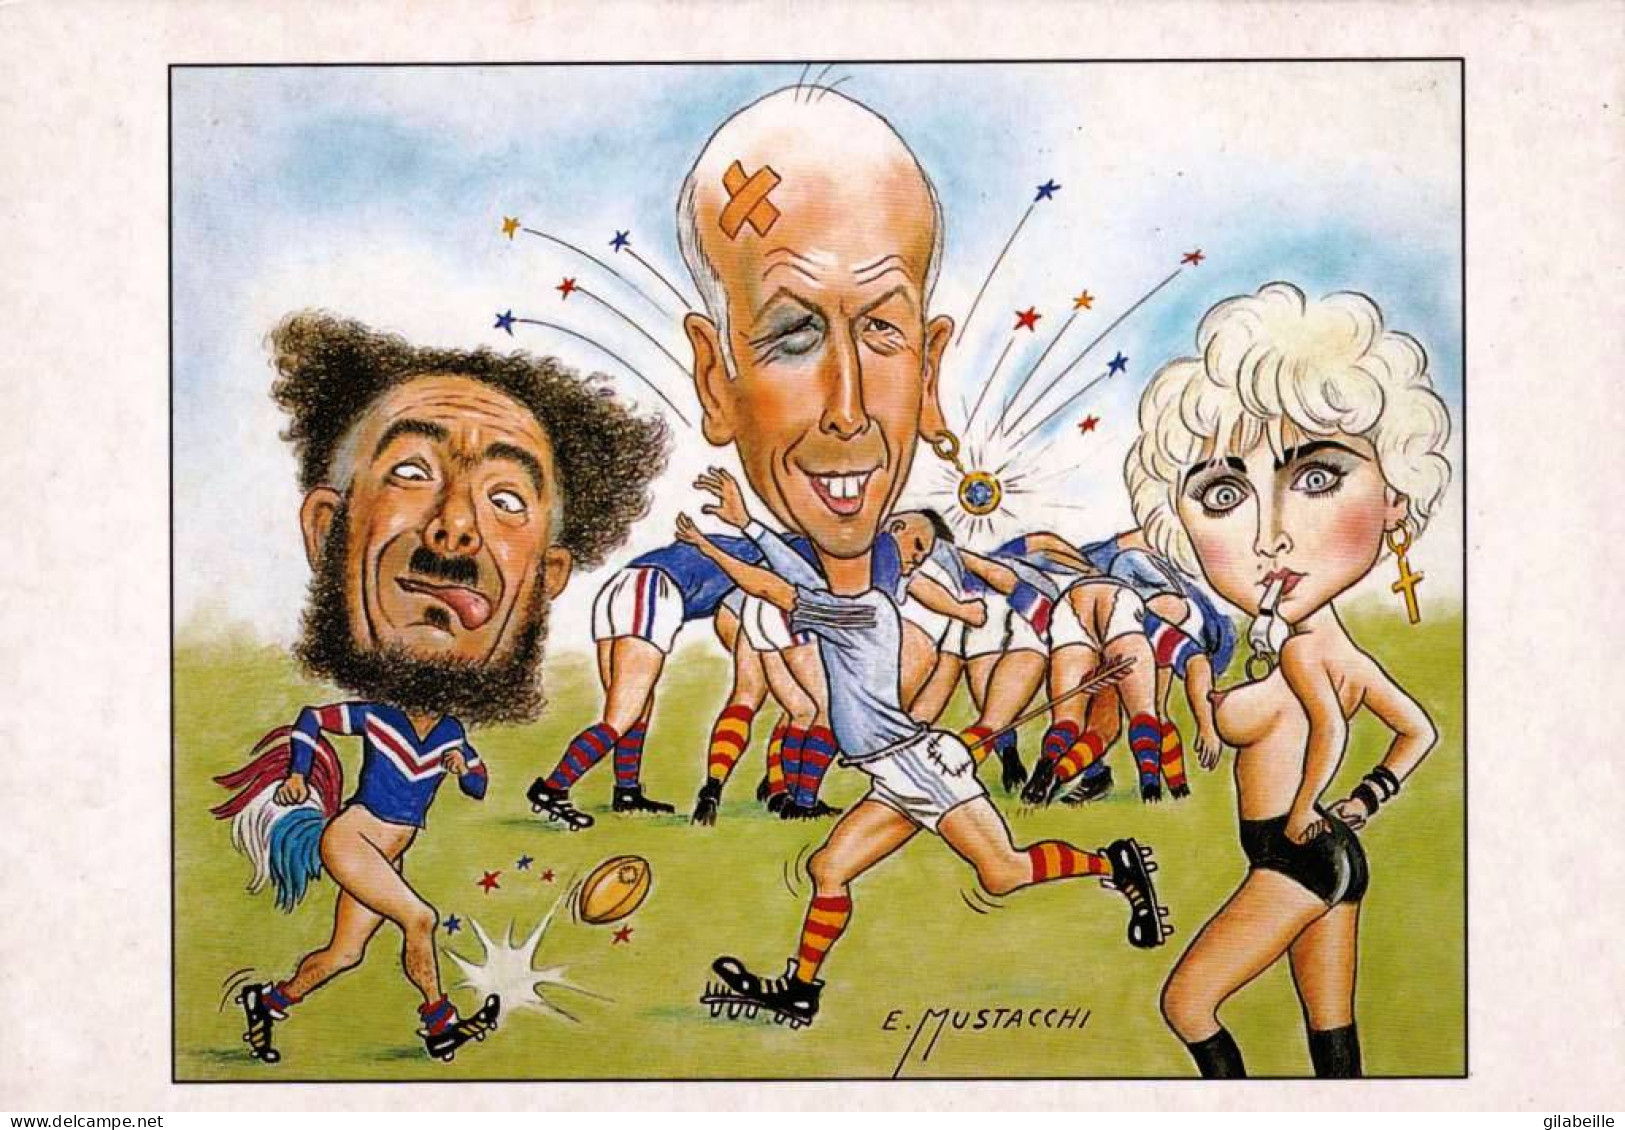  Illustrateur - Giscard D'Estaing Jouant Au Rugby Par Le Dessinateur E.MUSTACCHI - Ohne Zuordnung